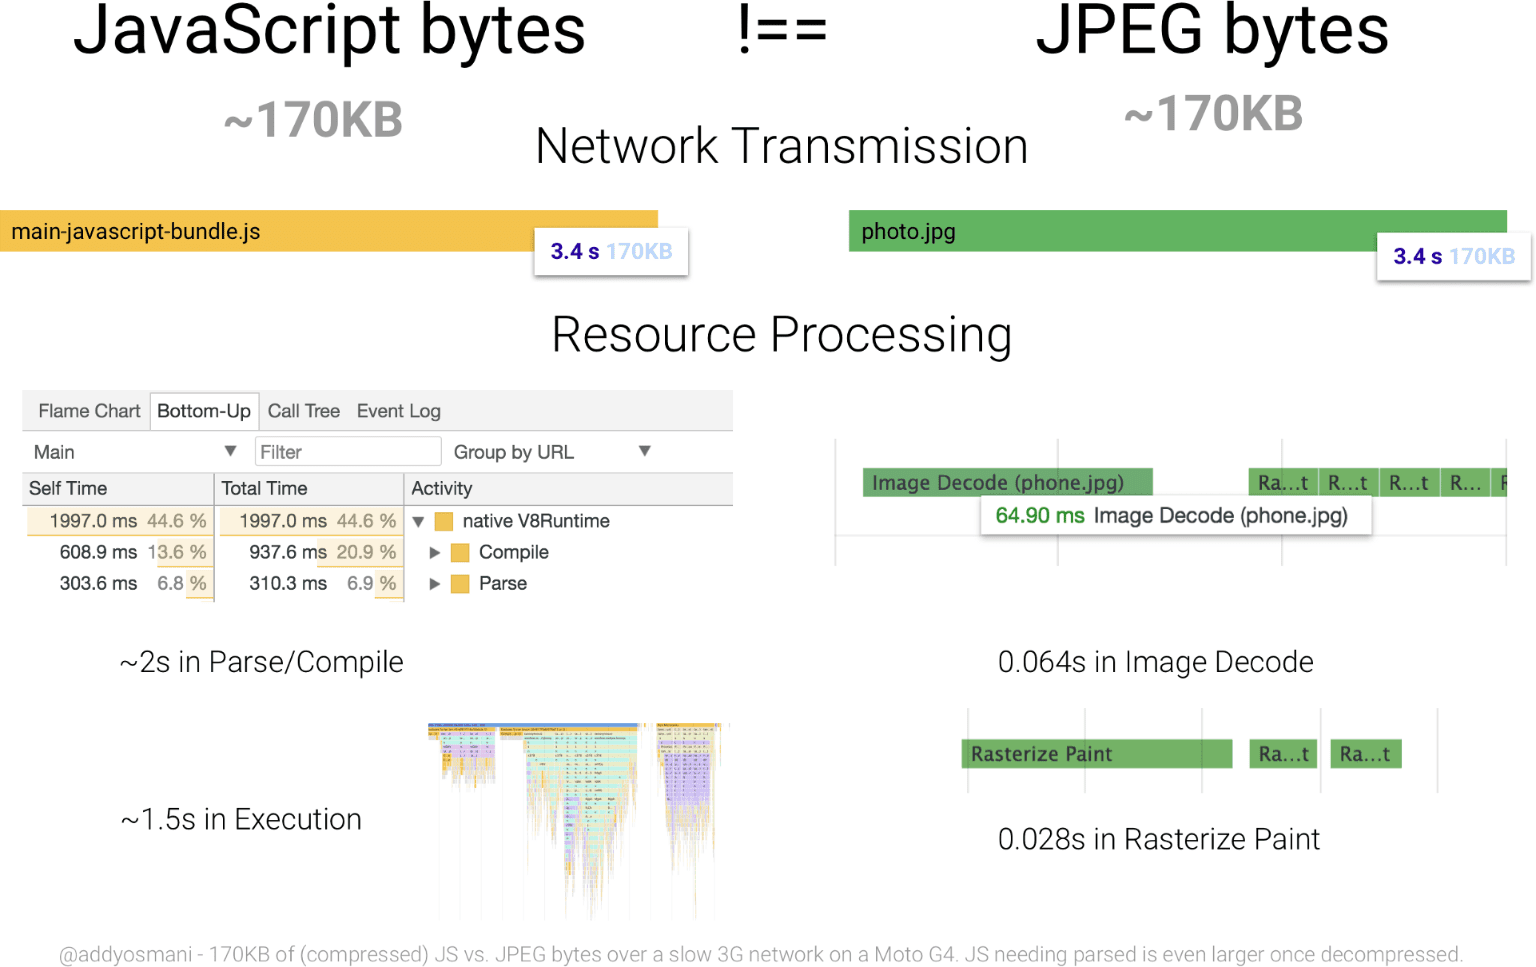 แผนภาพที่เปรียบเทียบเวลาประมวลผลของ JavaScript ขนาด 170 KB กับรูปภาพ JPEG ที่มีขนาดเท่ากัน ทรัพยากร JavaScript เป็นไบต์ที่ใช้ทรัพยากรมากเกินกว่า JPEG